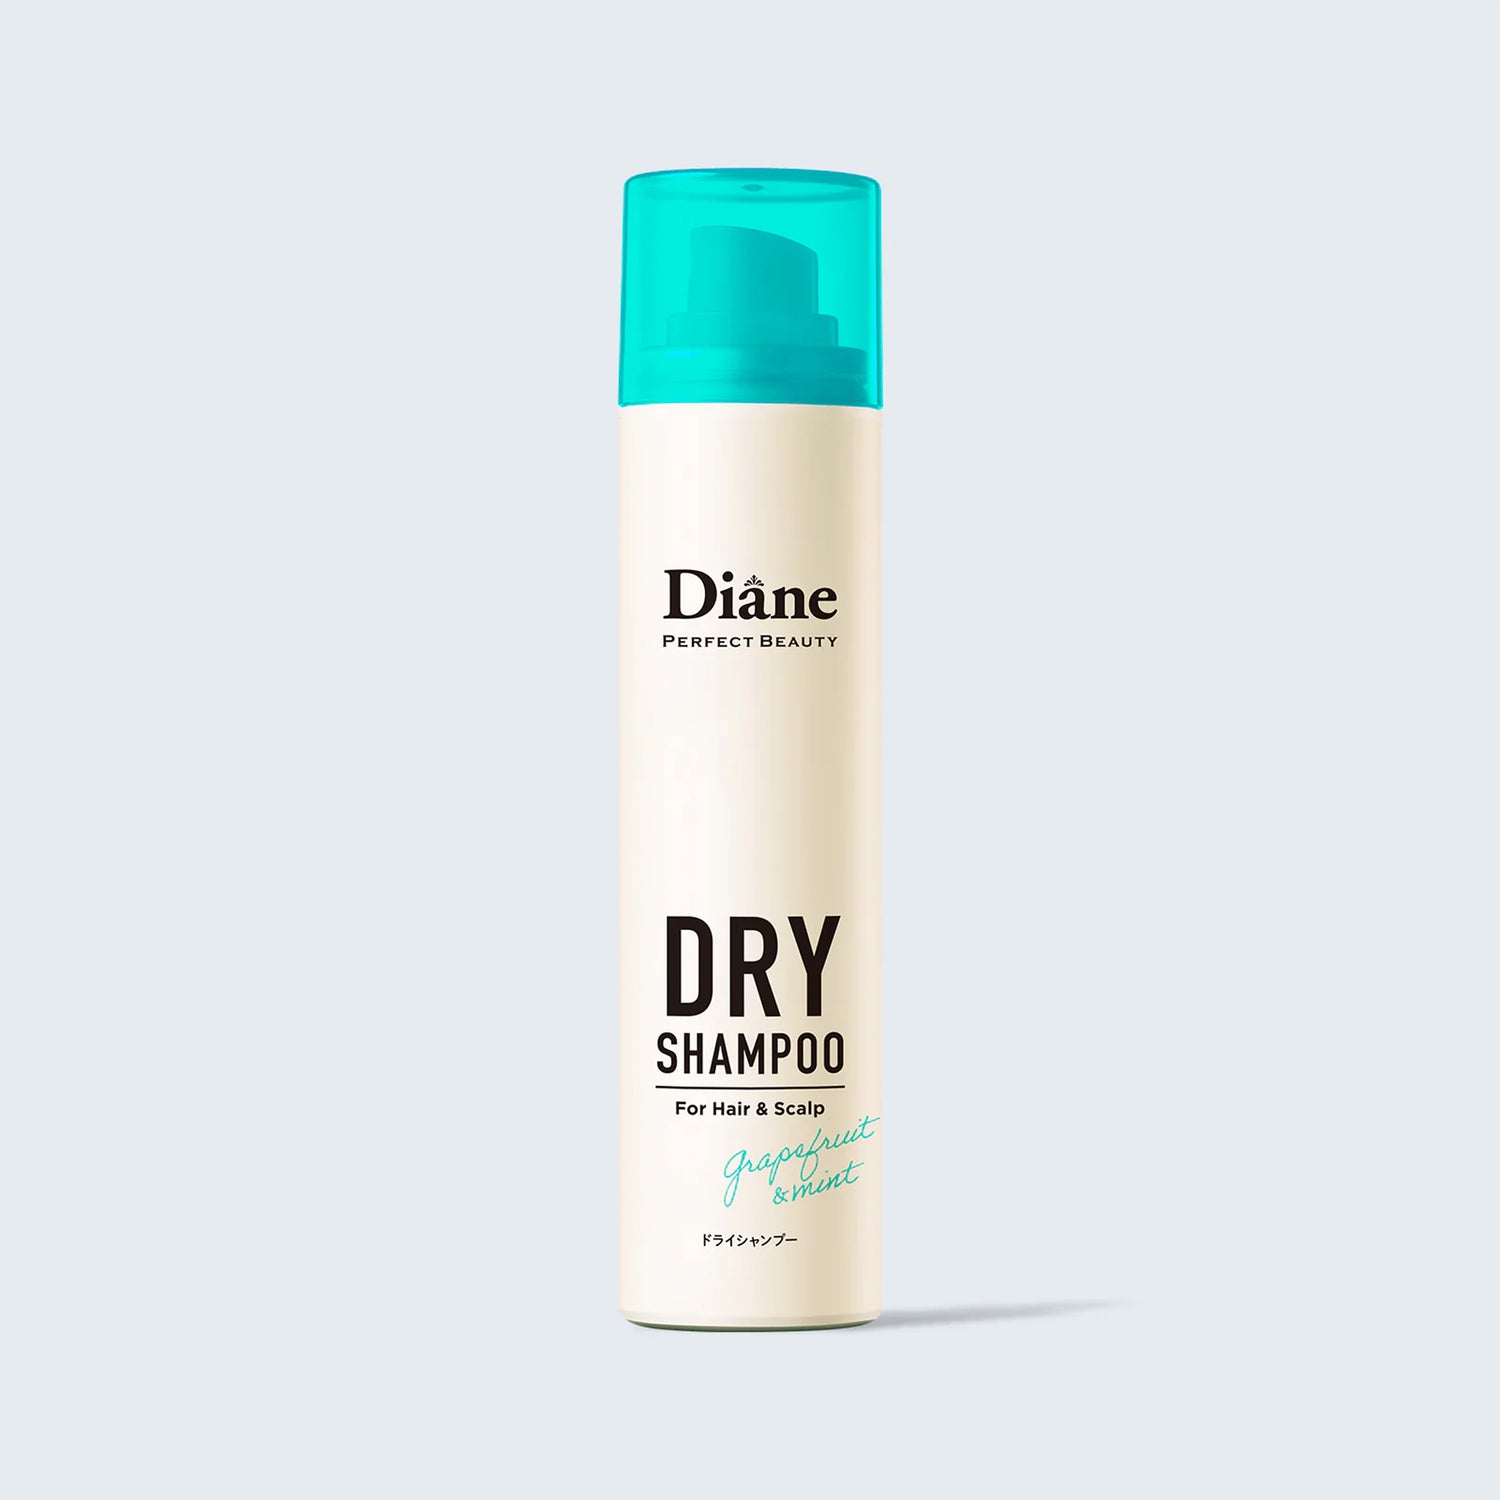 MOIST DIANE - 完美美容干洗洗发水 - 3 种 - 95g